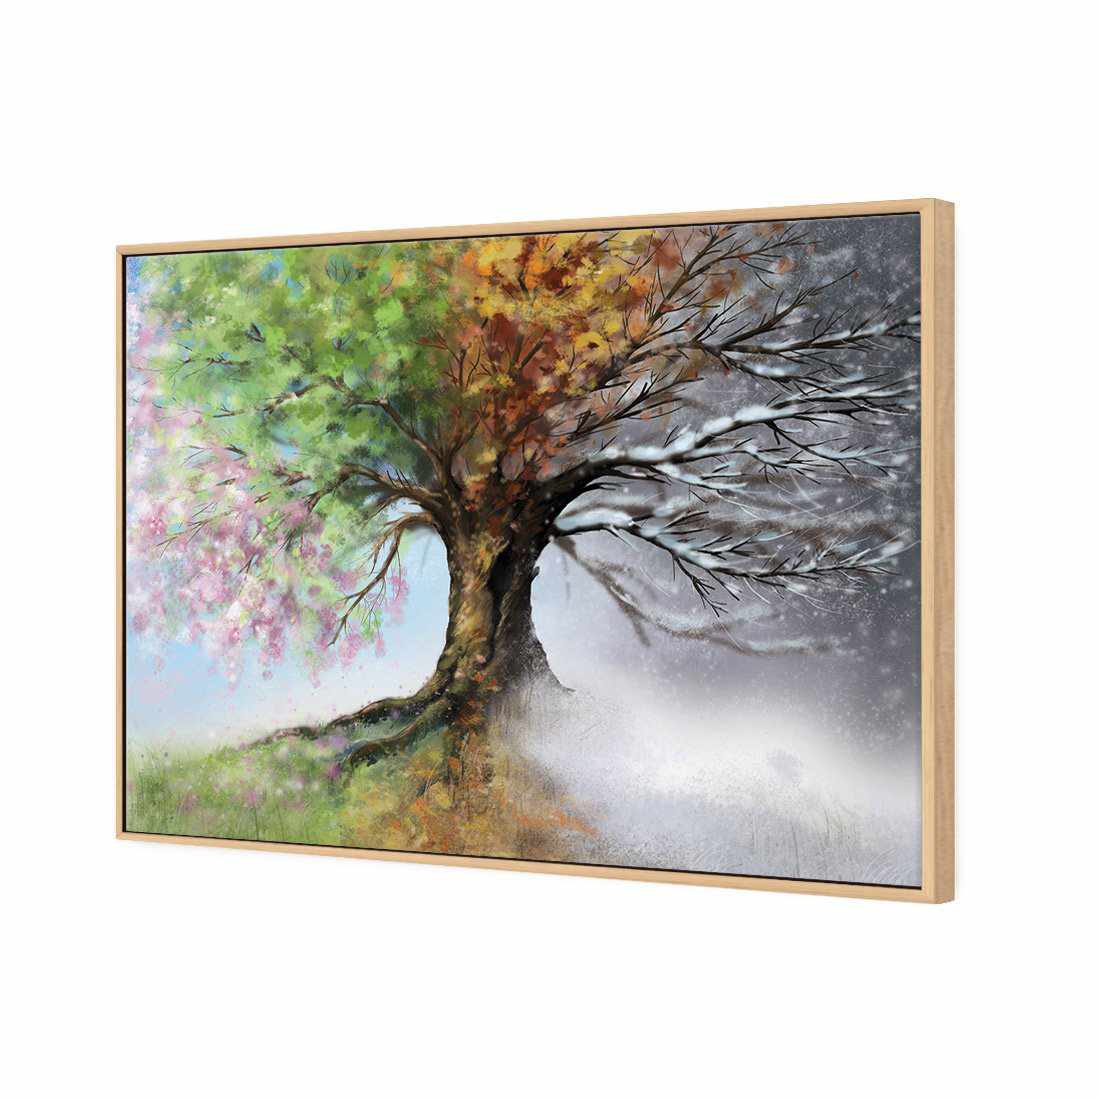 Mystical Tree Canvas Art-Canvas-Wall Art Designs-45x30cm-Canvas - Oak Frame-Wall Art Designs